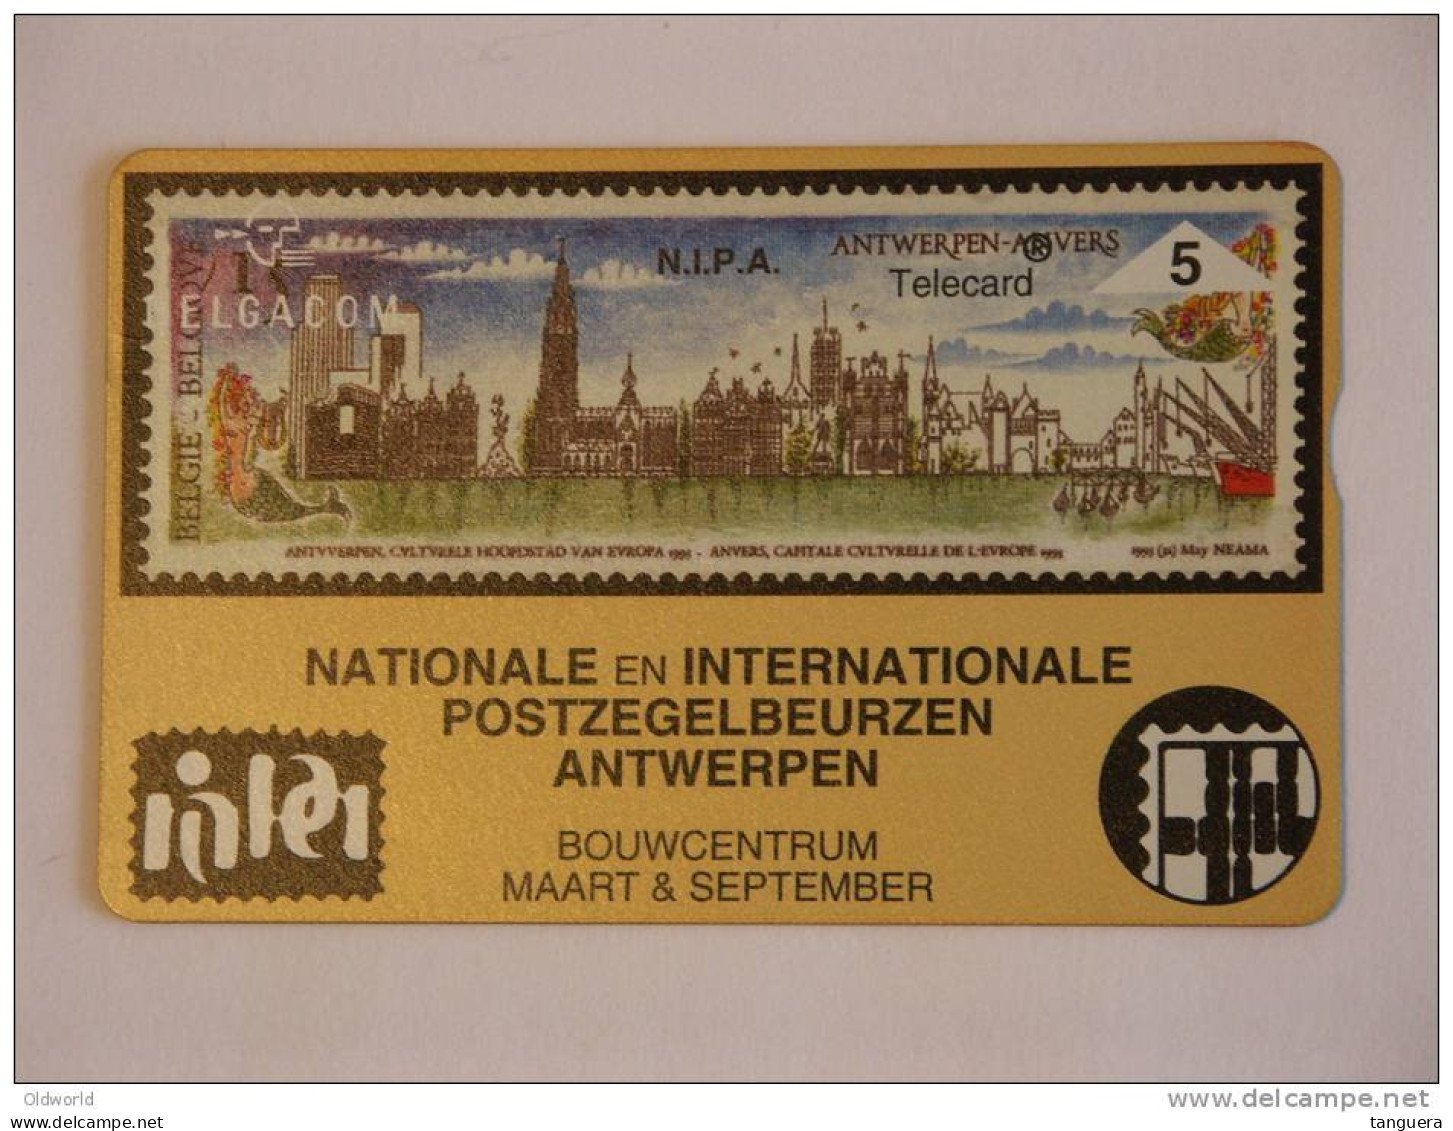 Telefoonkaart Telecard Belgacom Belgique België Privee N.I.P.A Beurs Bourse Timbre Postzegels Mint - Sans Puce